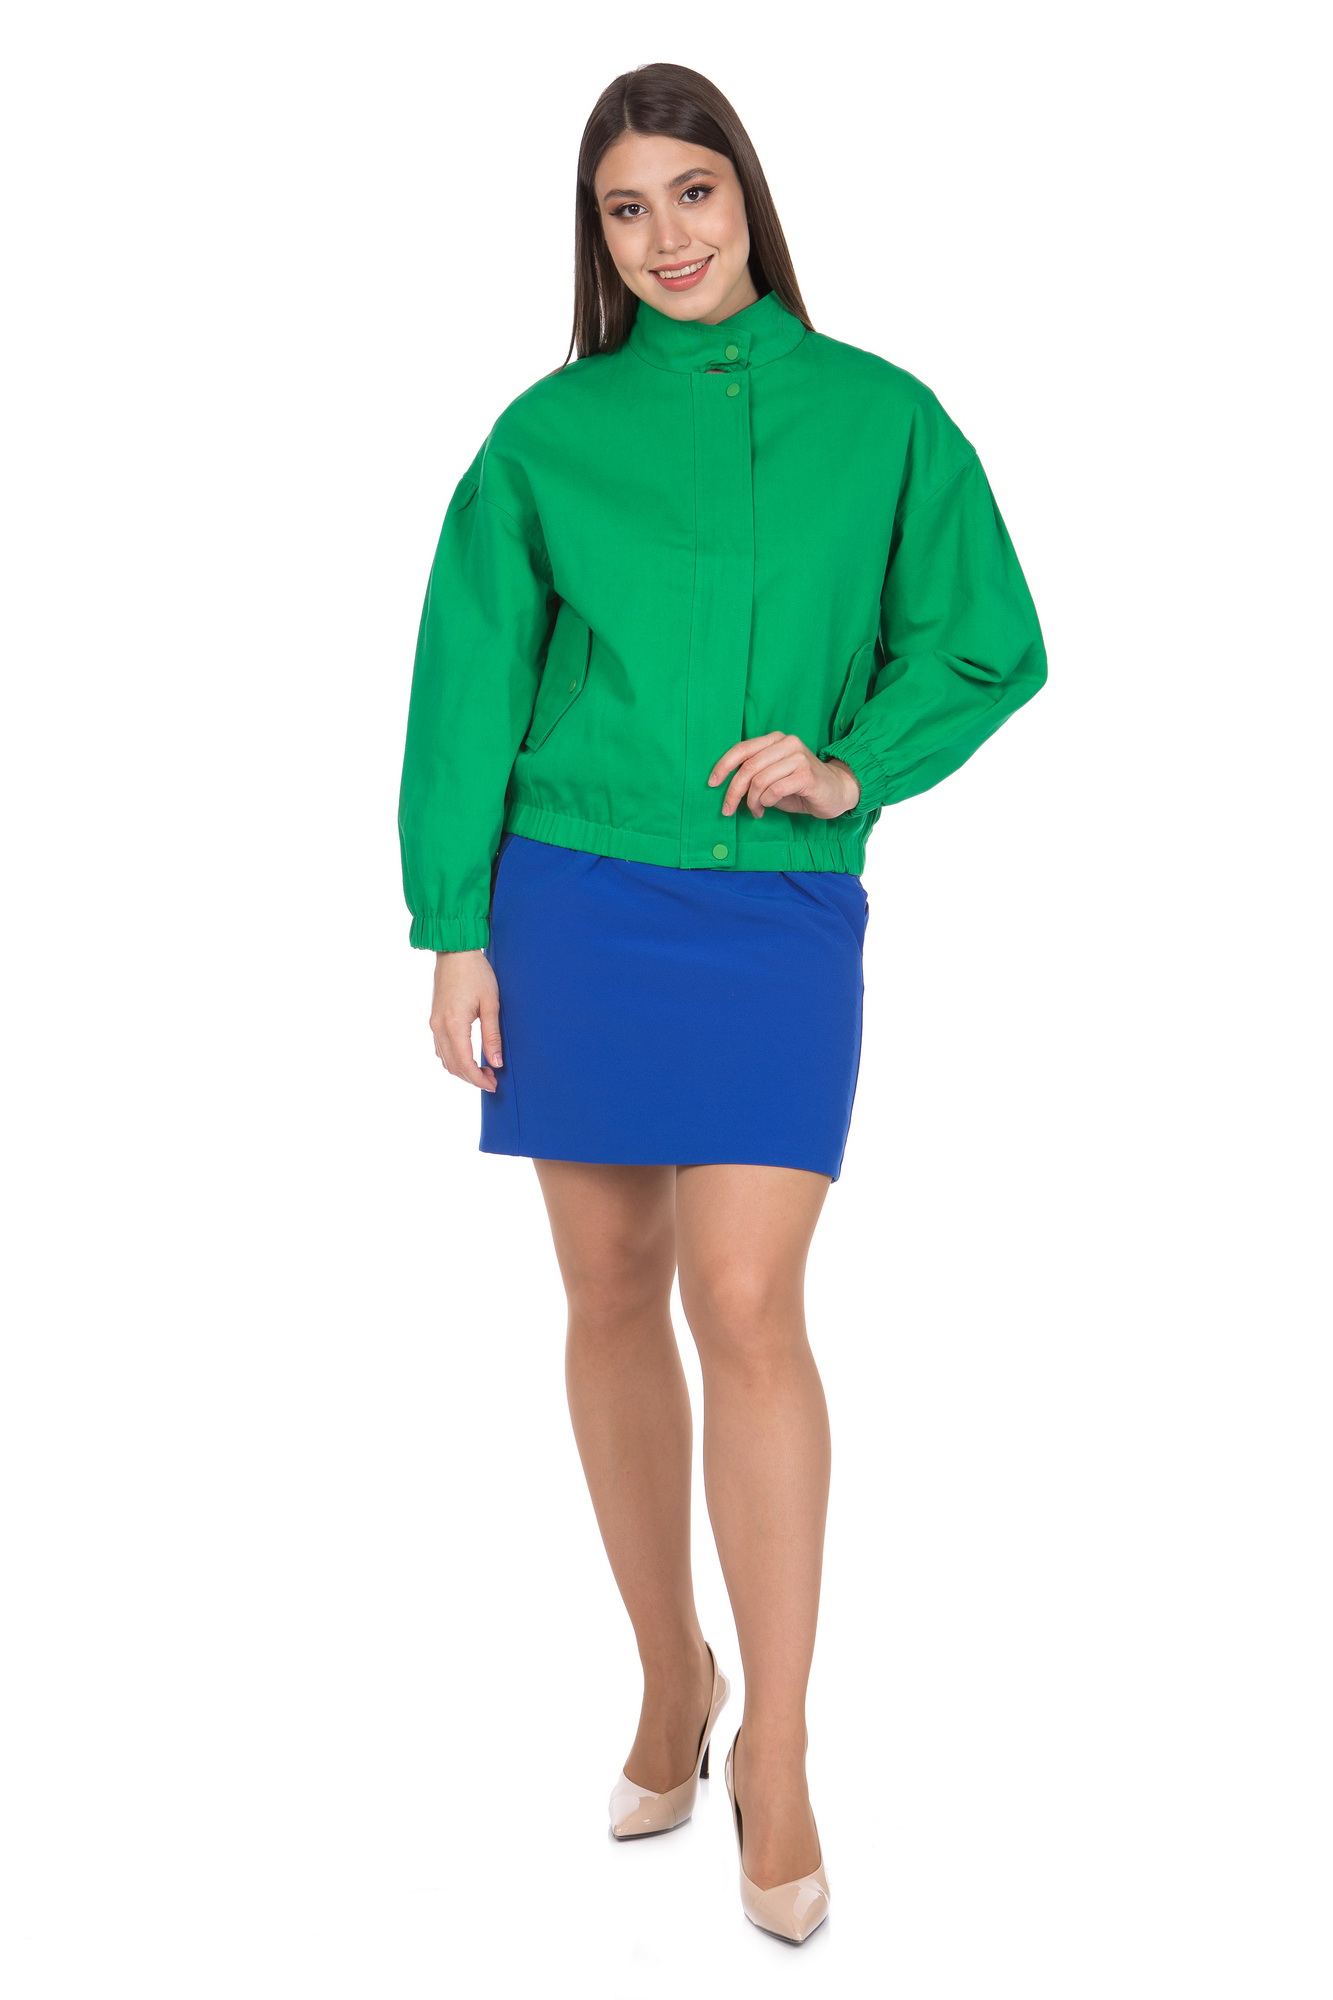 Джинсовая куртка женская МОСМЕХА 8021706 зеленая 50 RU